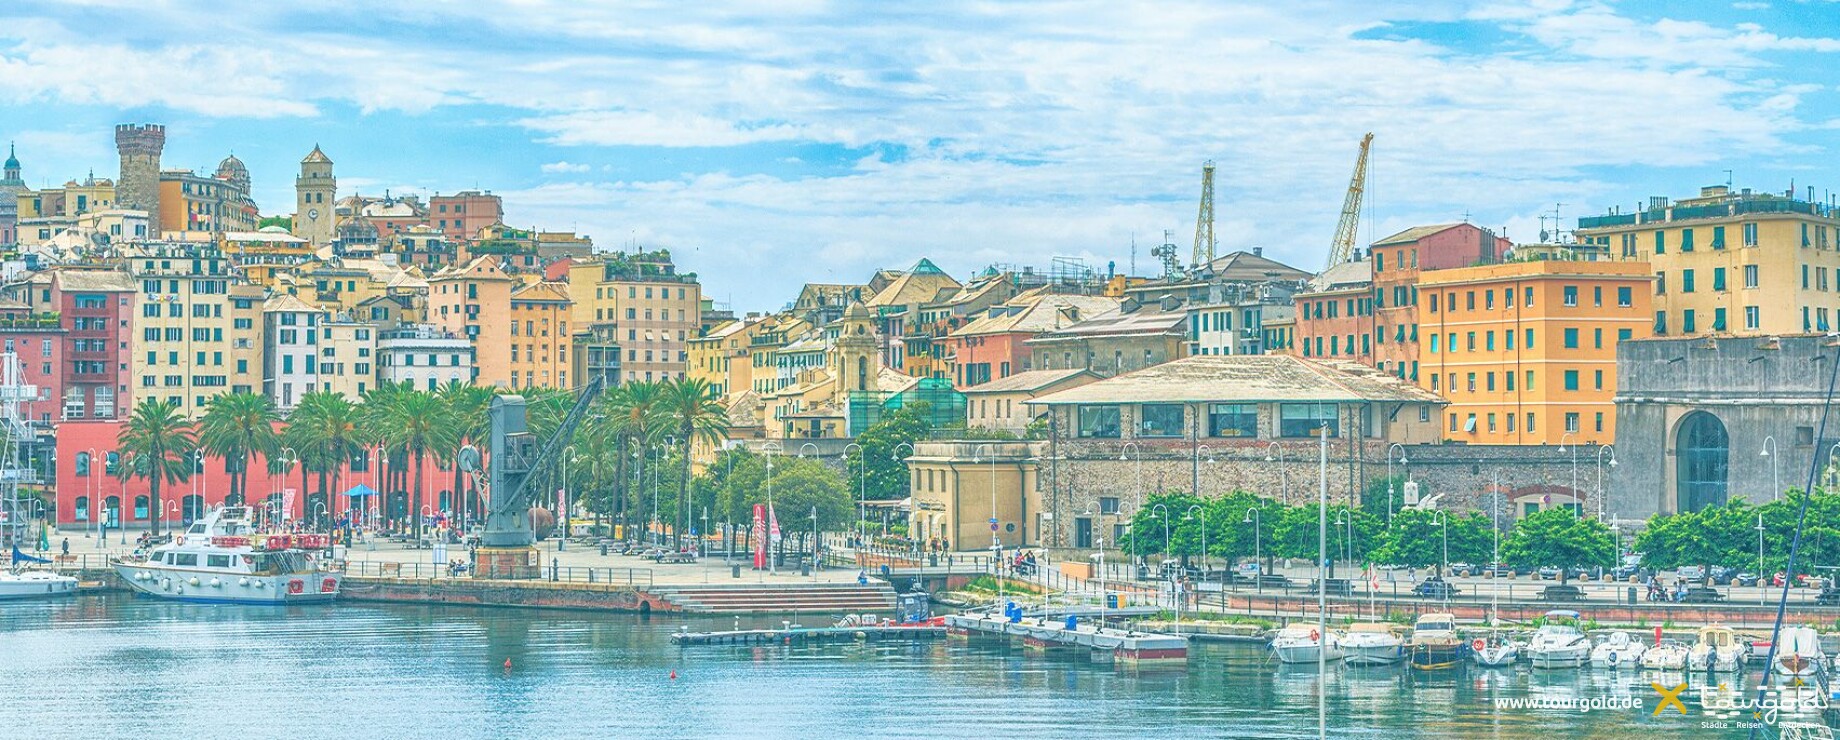 Das authentische Genua, die bezaubernden Cinque Terre und die Metropole Mailand